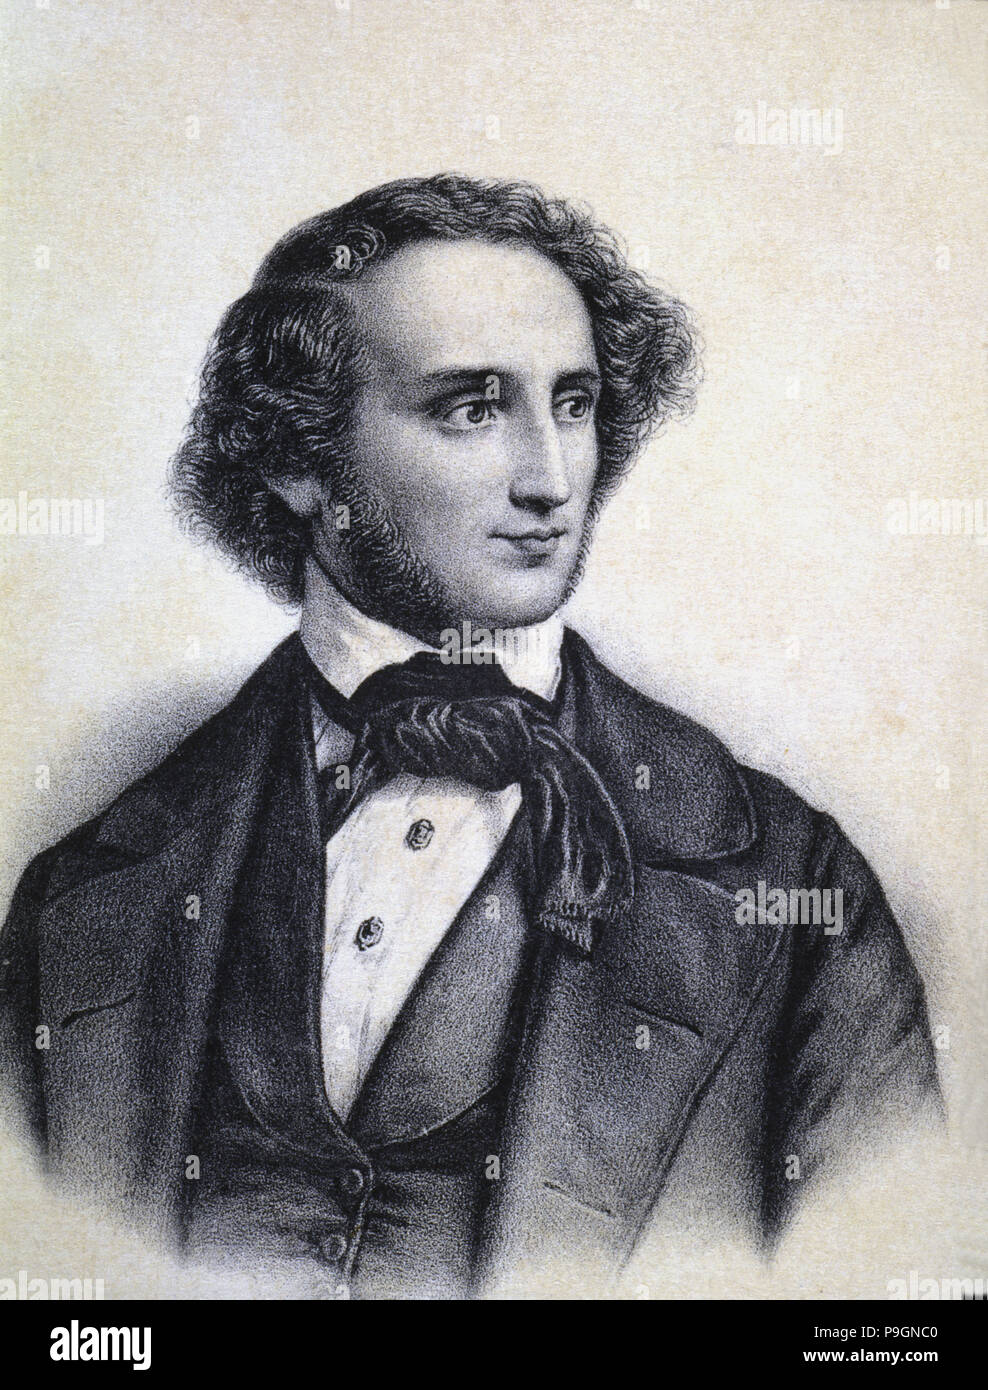 felix mendelssohn bartholdy 1809 1847 deutscher komponist und dirigent stockfotografie alamy